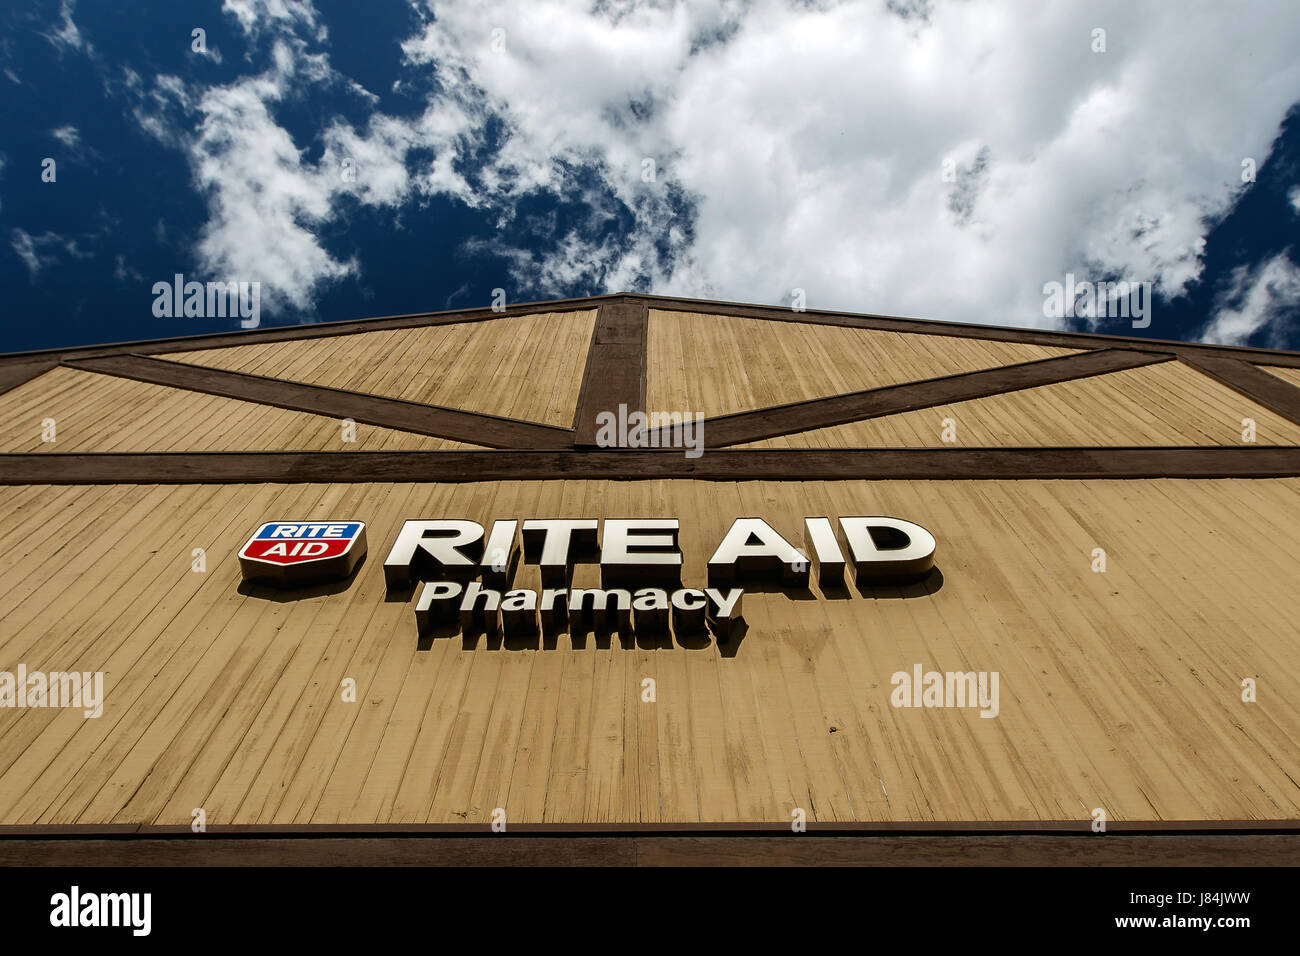 Park City, Utah, 12 mai 2017 : Rite Aid pharmacy signe au-dessus de l'entrée de la pharmacie est éclairée par le soleil. Banque D'Images